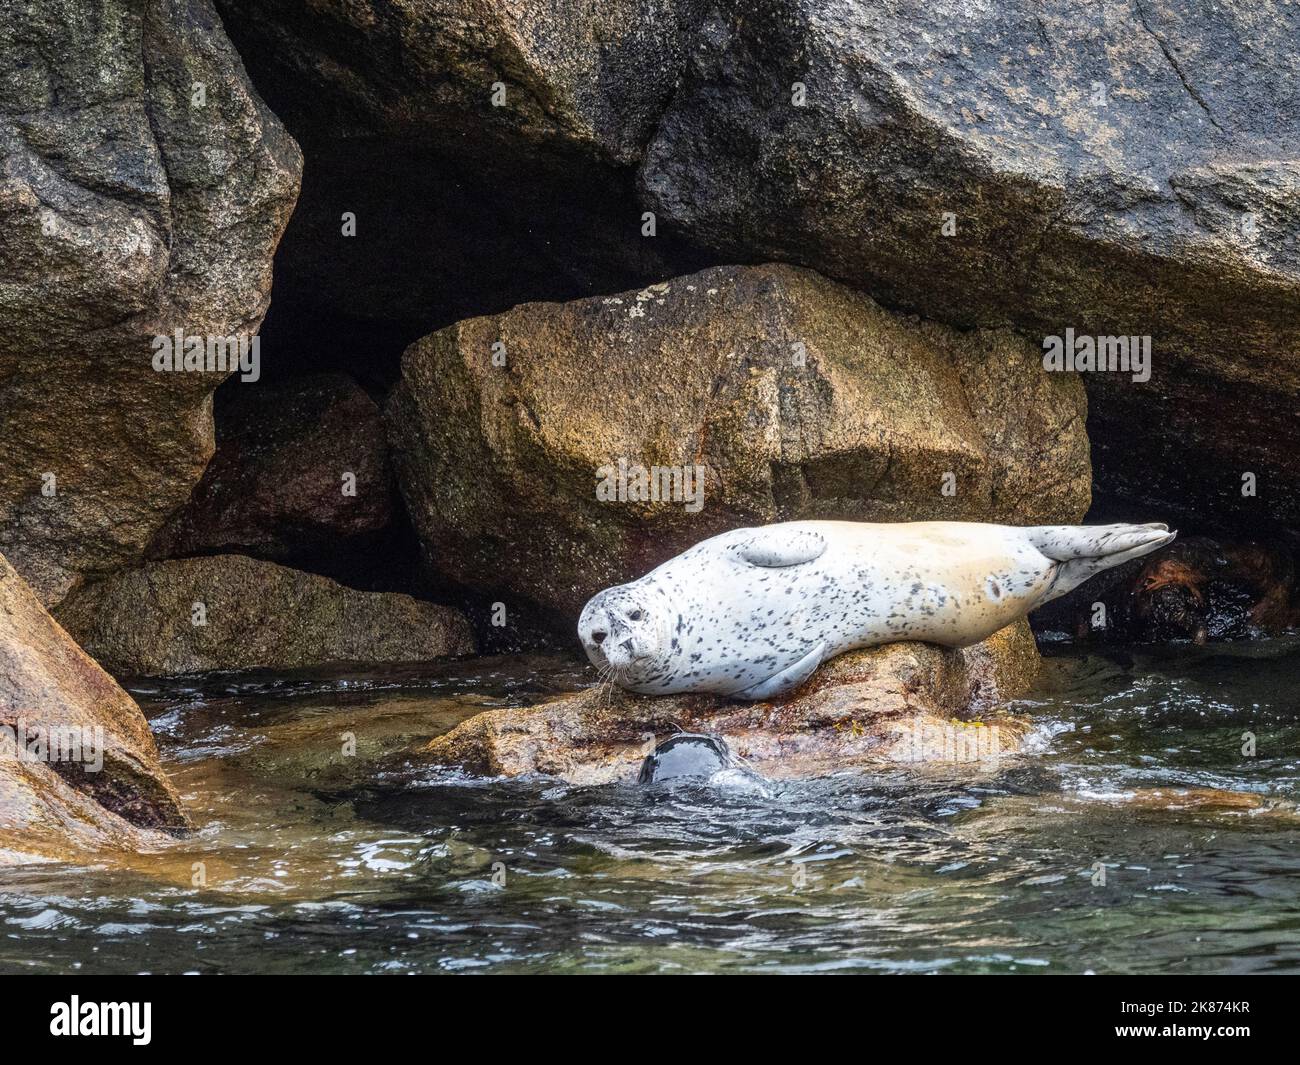 Un phoque commun adulte (Phoca vitulina) a été transporté sur les rochers du parc national Kenai Fjords, Alaska, États-Unis d'Amérique, Amérique du Nord Banque D'Images